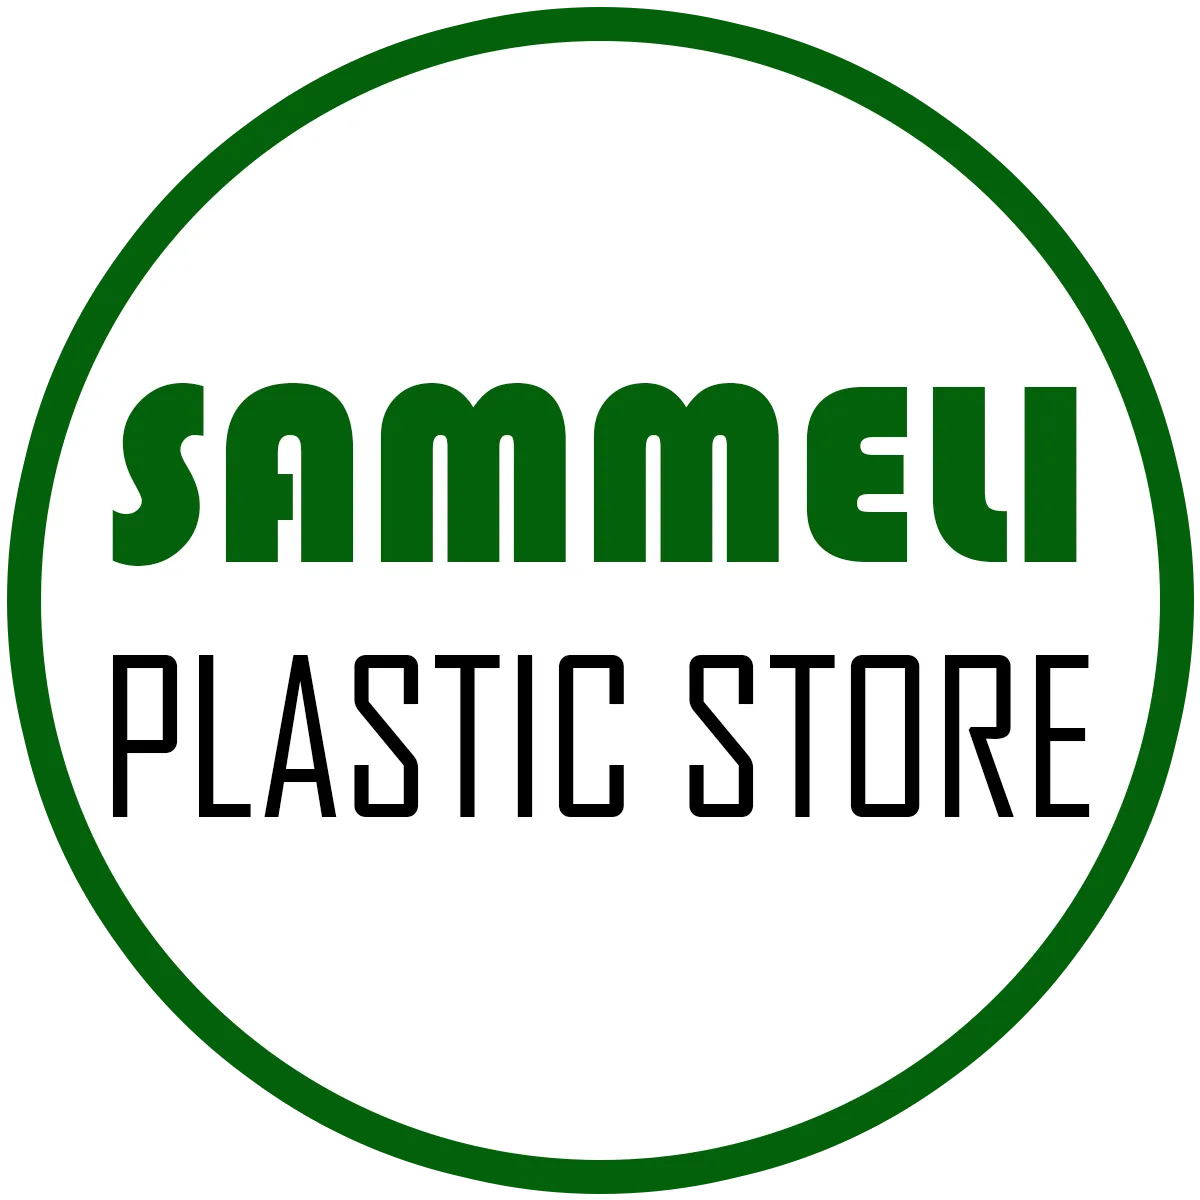 Sammeli Plastic Store